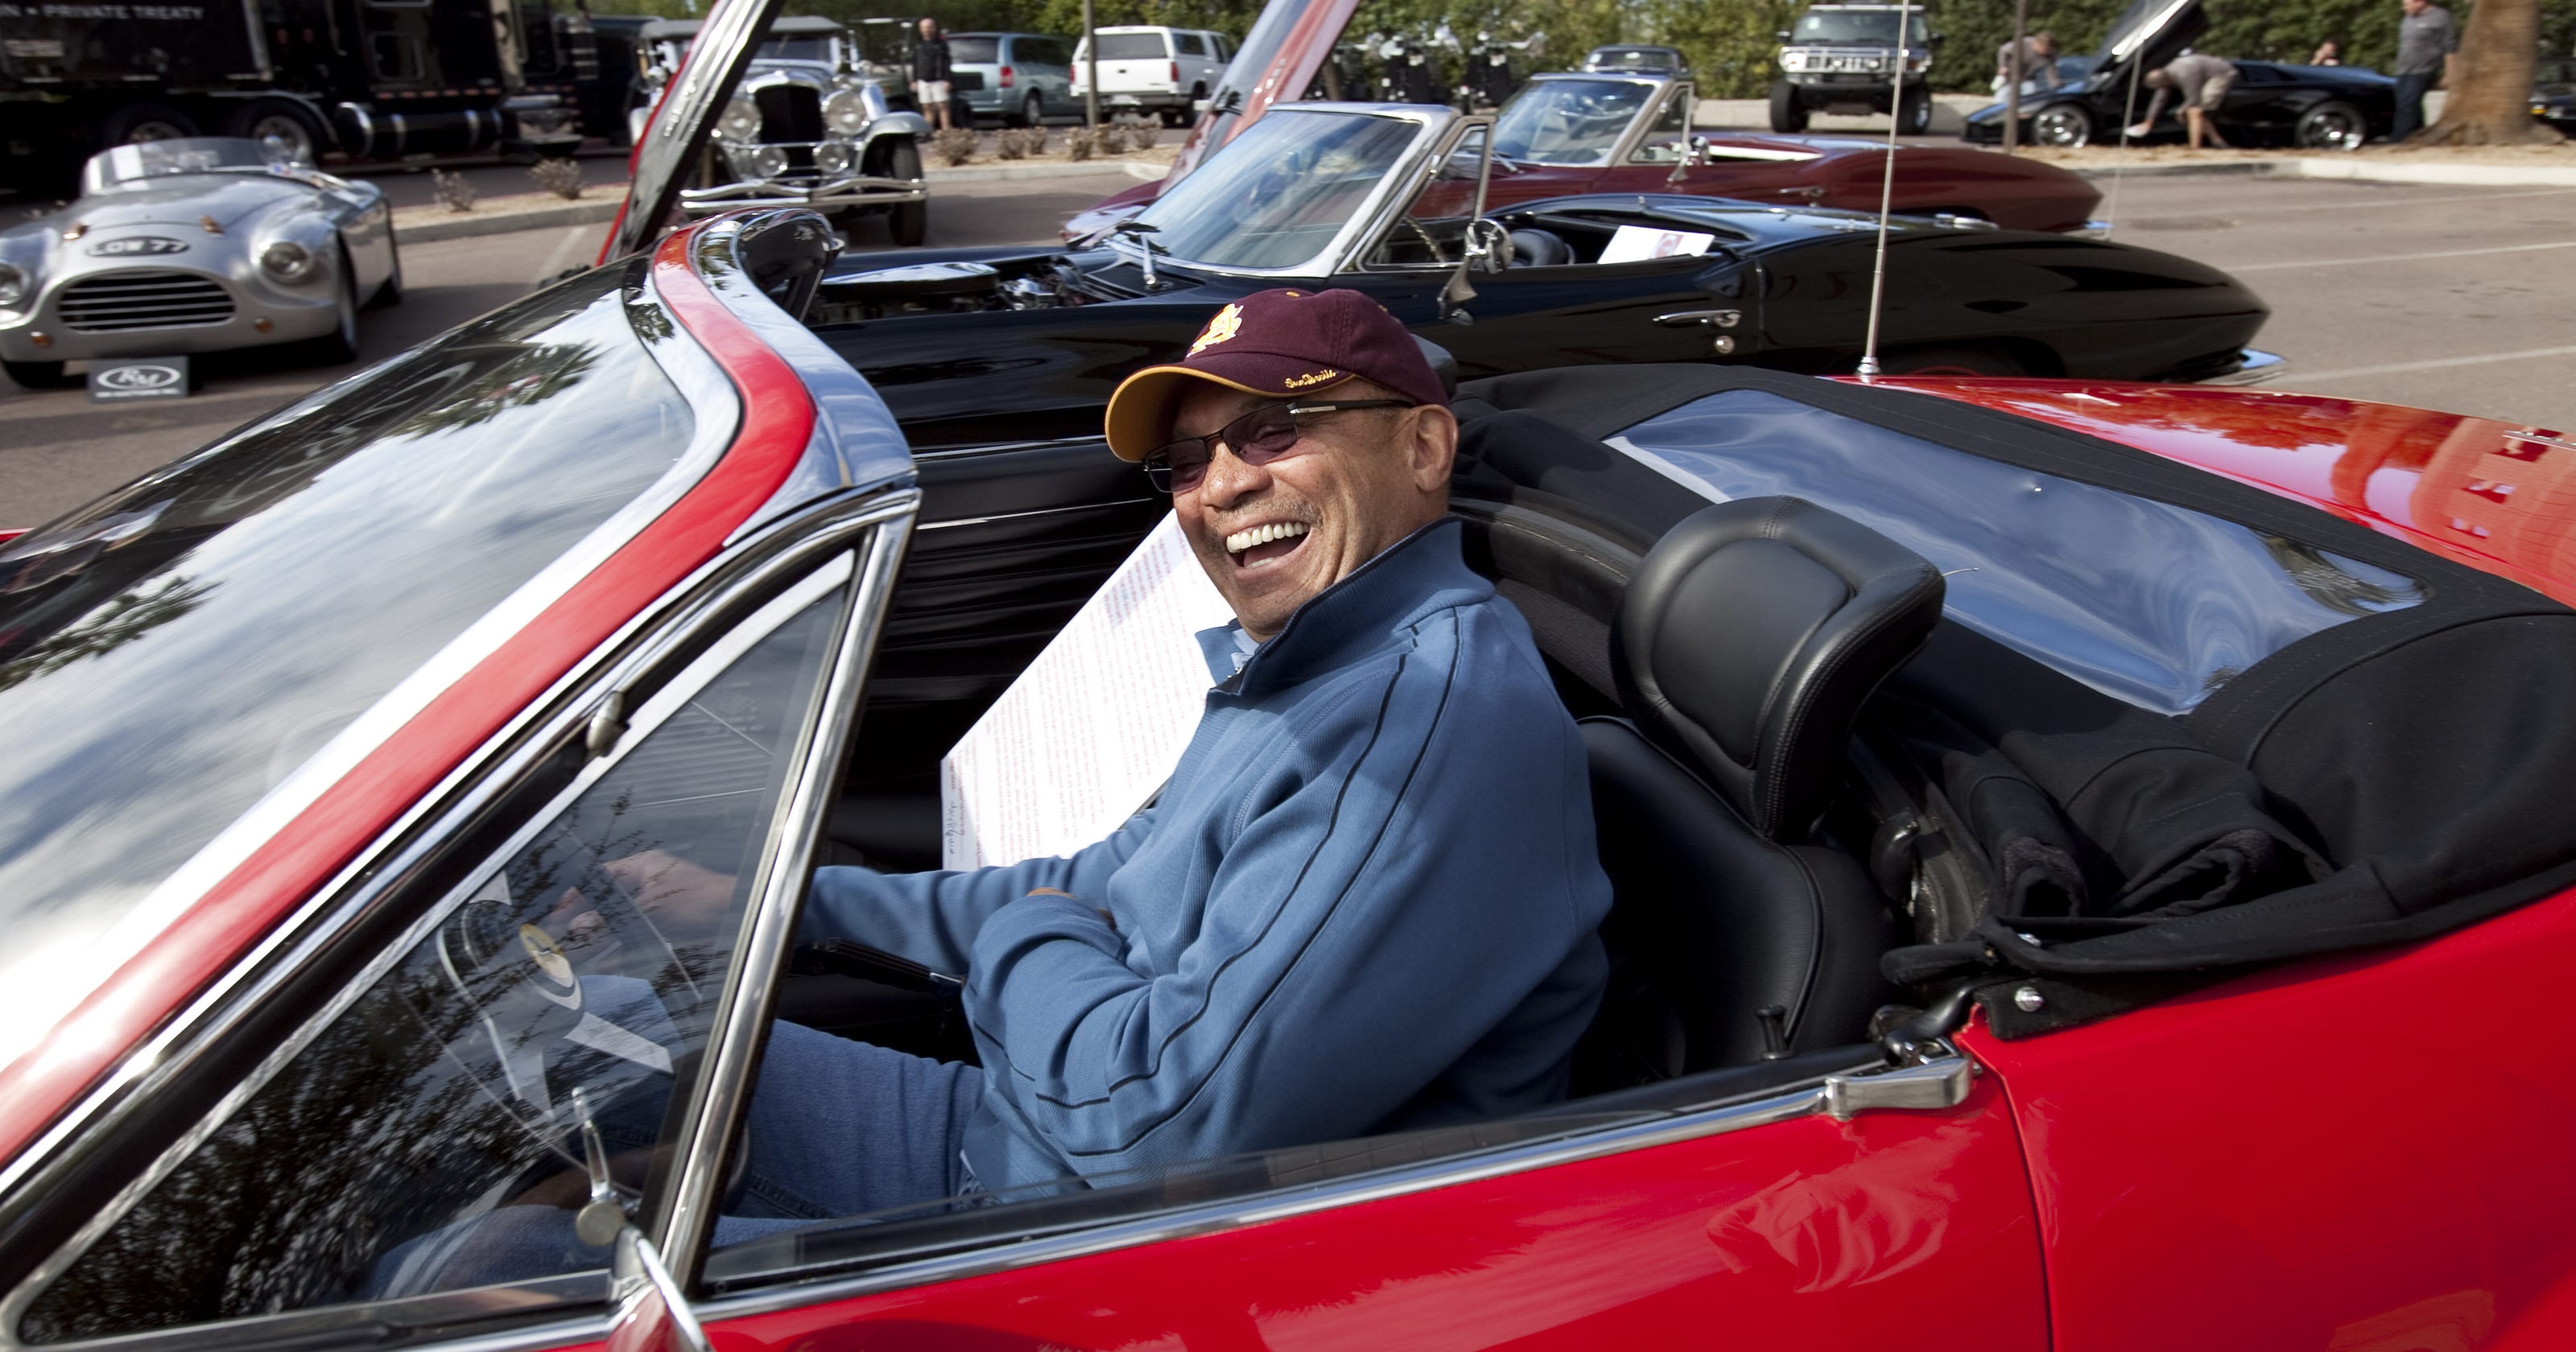 Reggie Jackson bringing 18 of his classic cars to Mecum Indianapolis